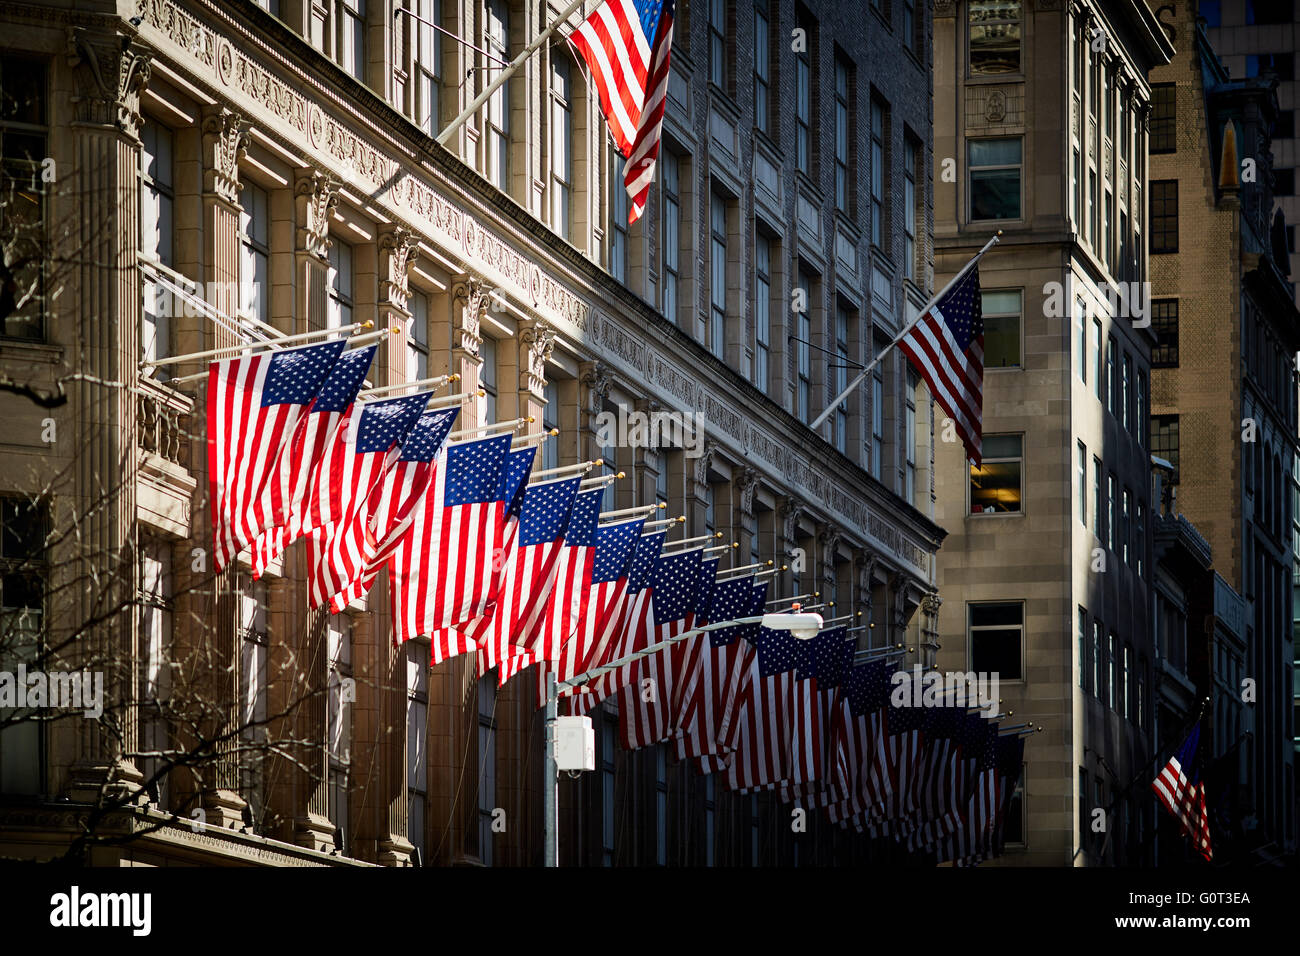 New York viele viele große Menge Zeilen Fahnen Stars stripes hängenden äußeren des Gebäudes unter der Flagge der Vereinigten Staaten von Amerika Stockfoto